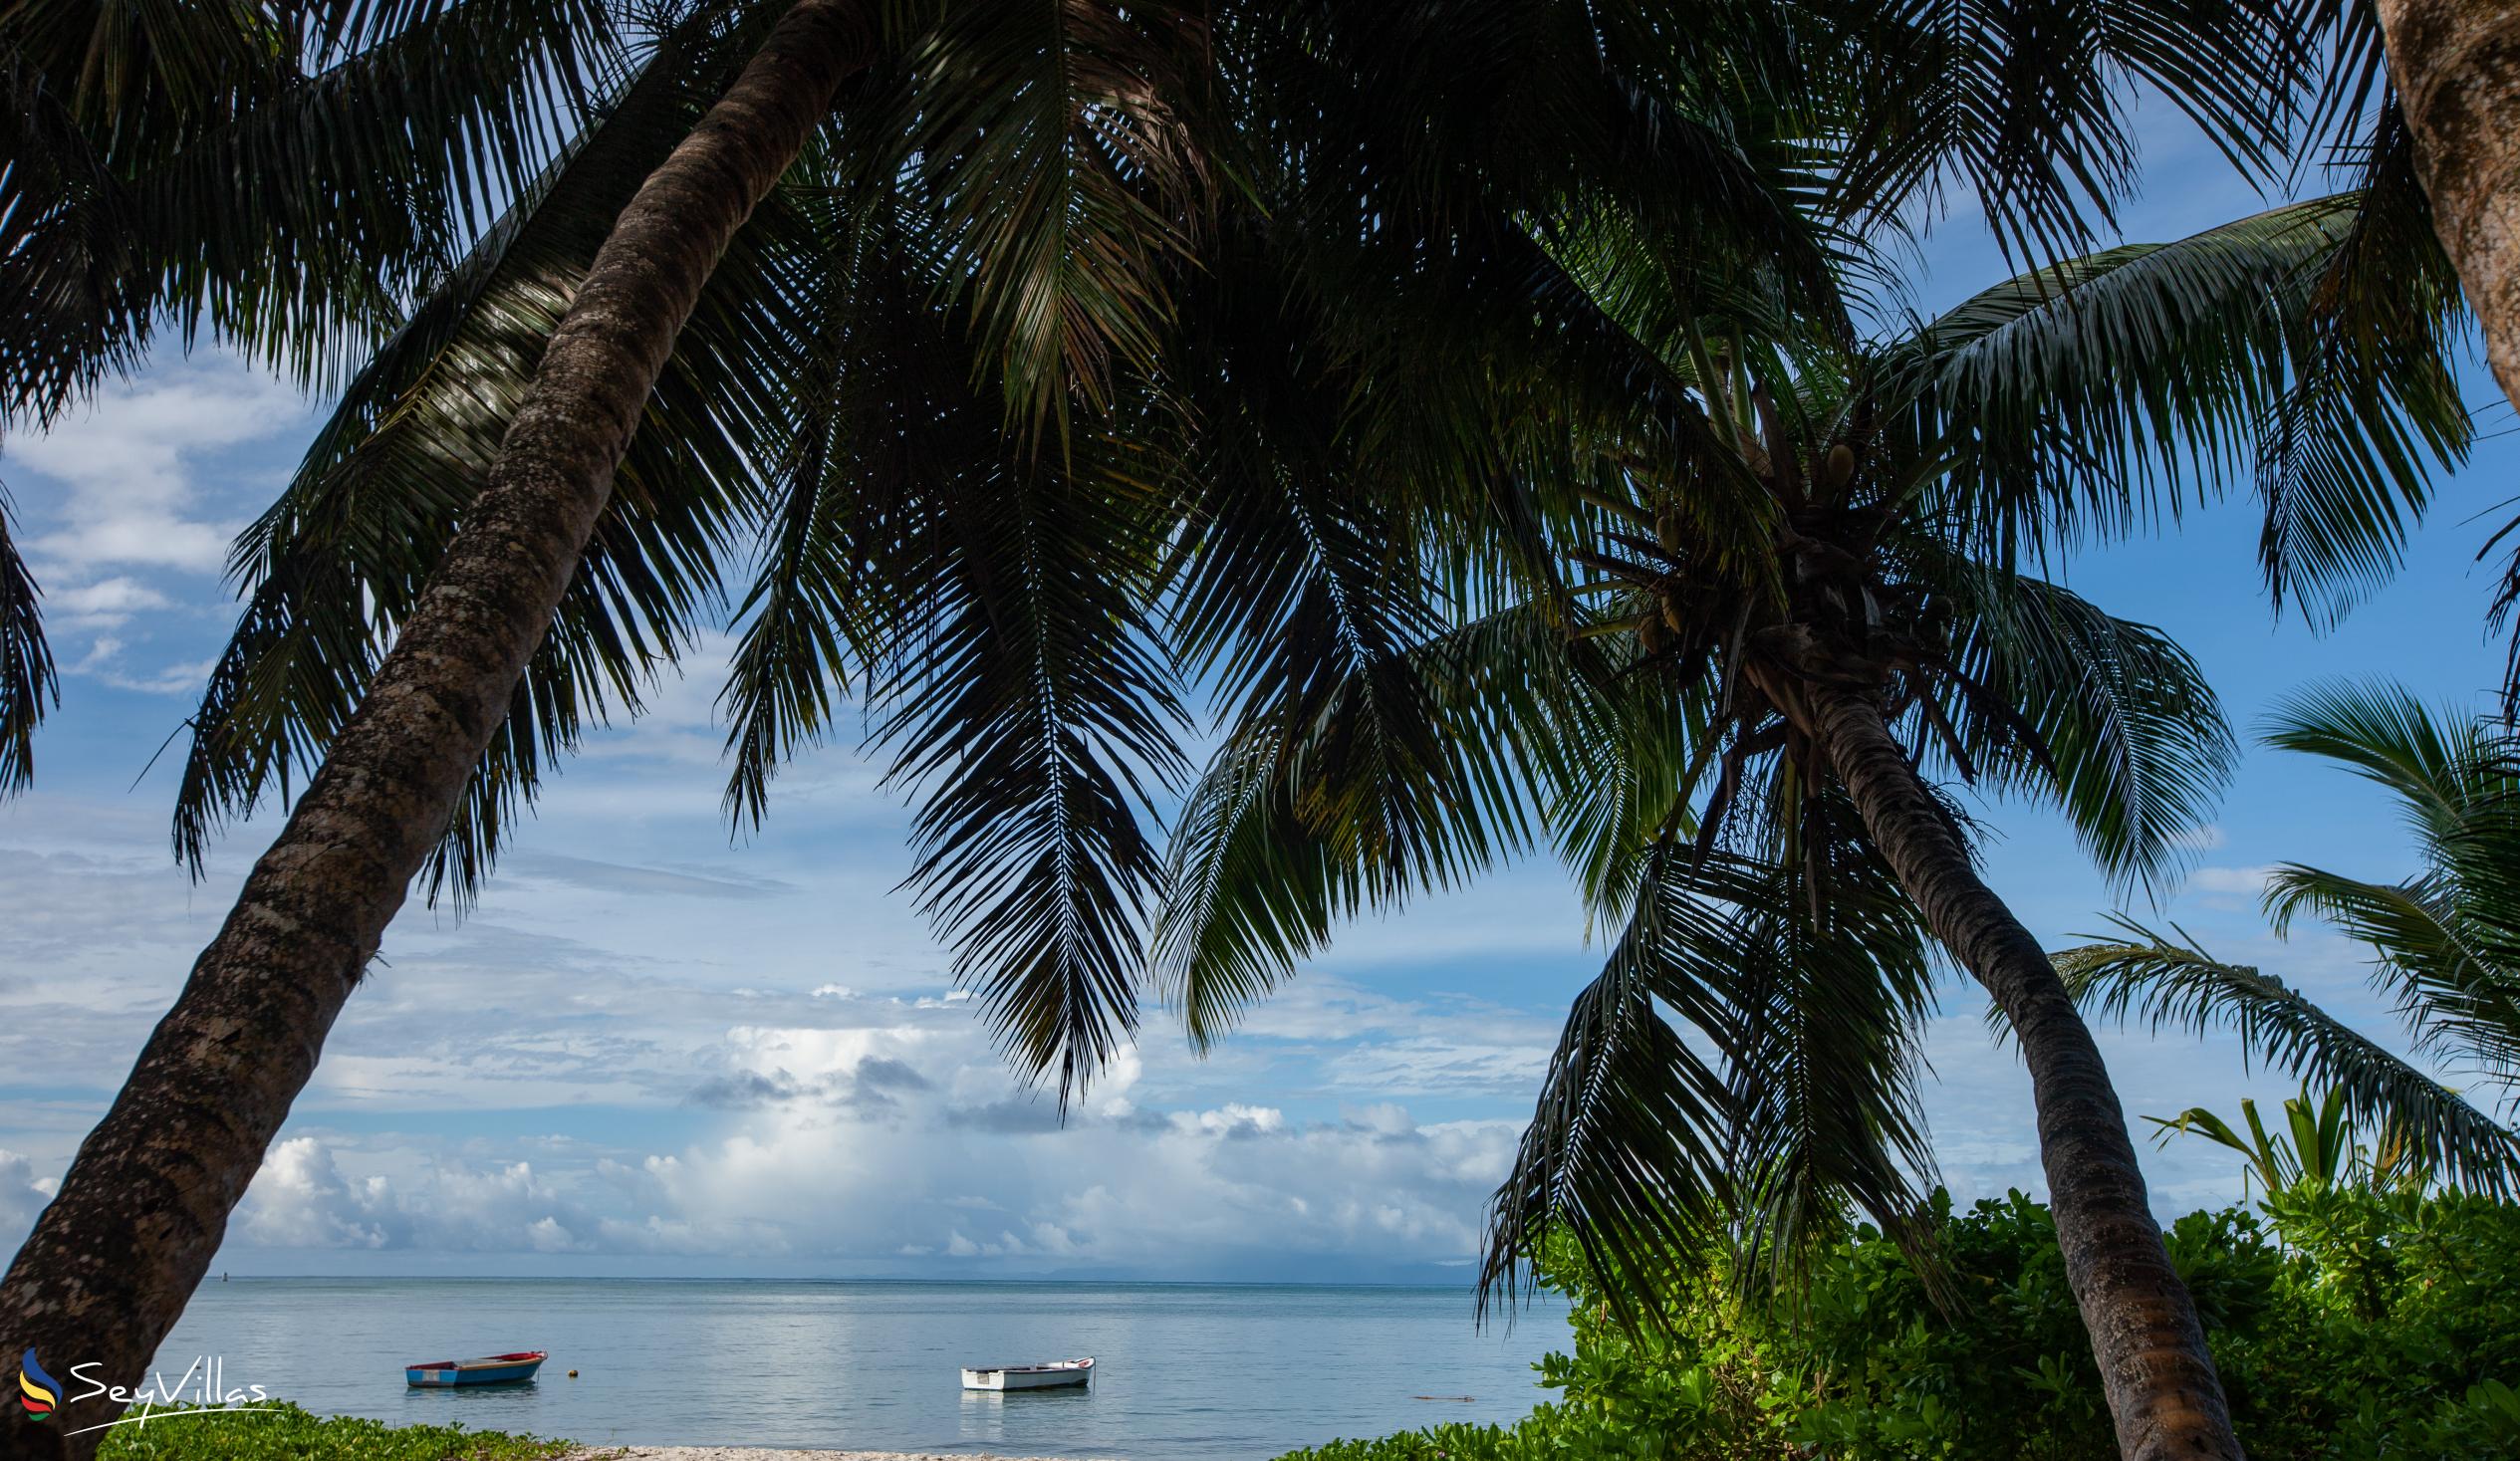 Photo 7: Hotel Plein Soleil - Location - Praslin (Seychelles)